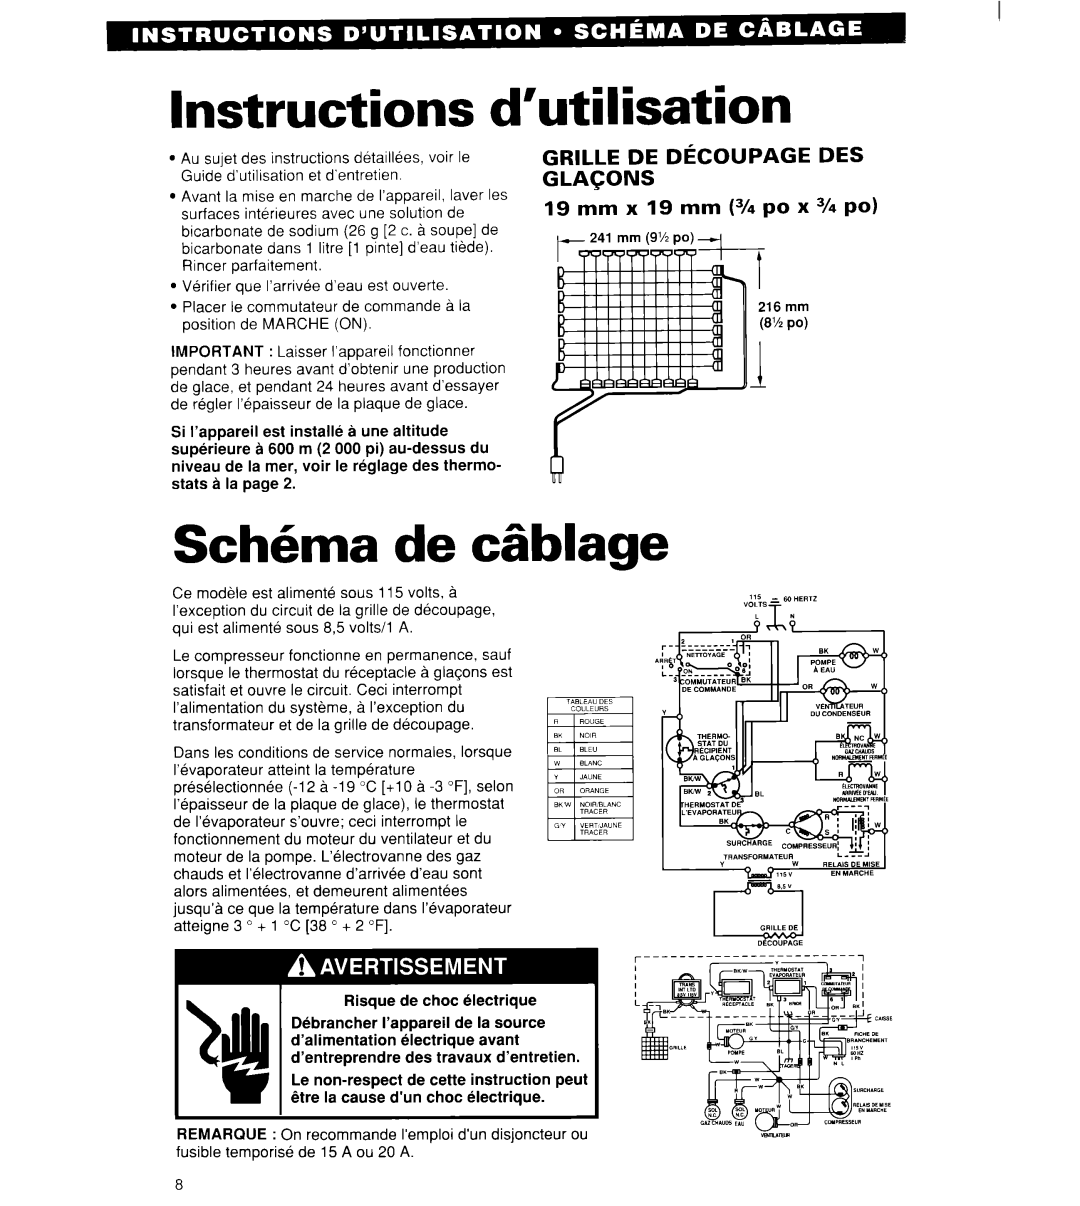 Whirlpool 2180913 manual Instructions d’utilisation, Sch6ma de cgblage, Grille De Decoupage Des Glacons 